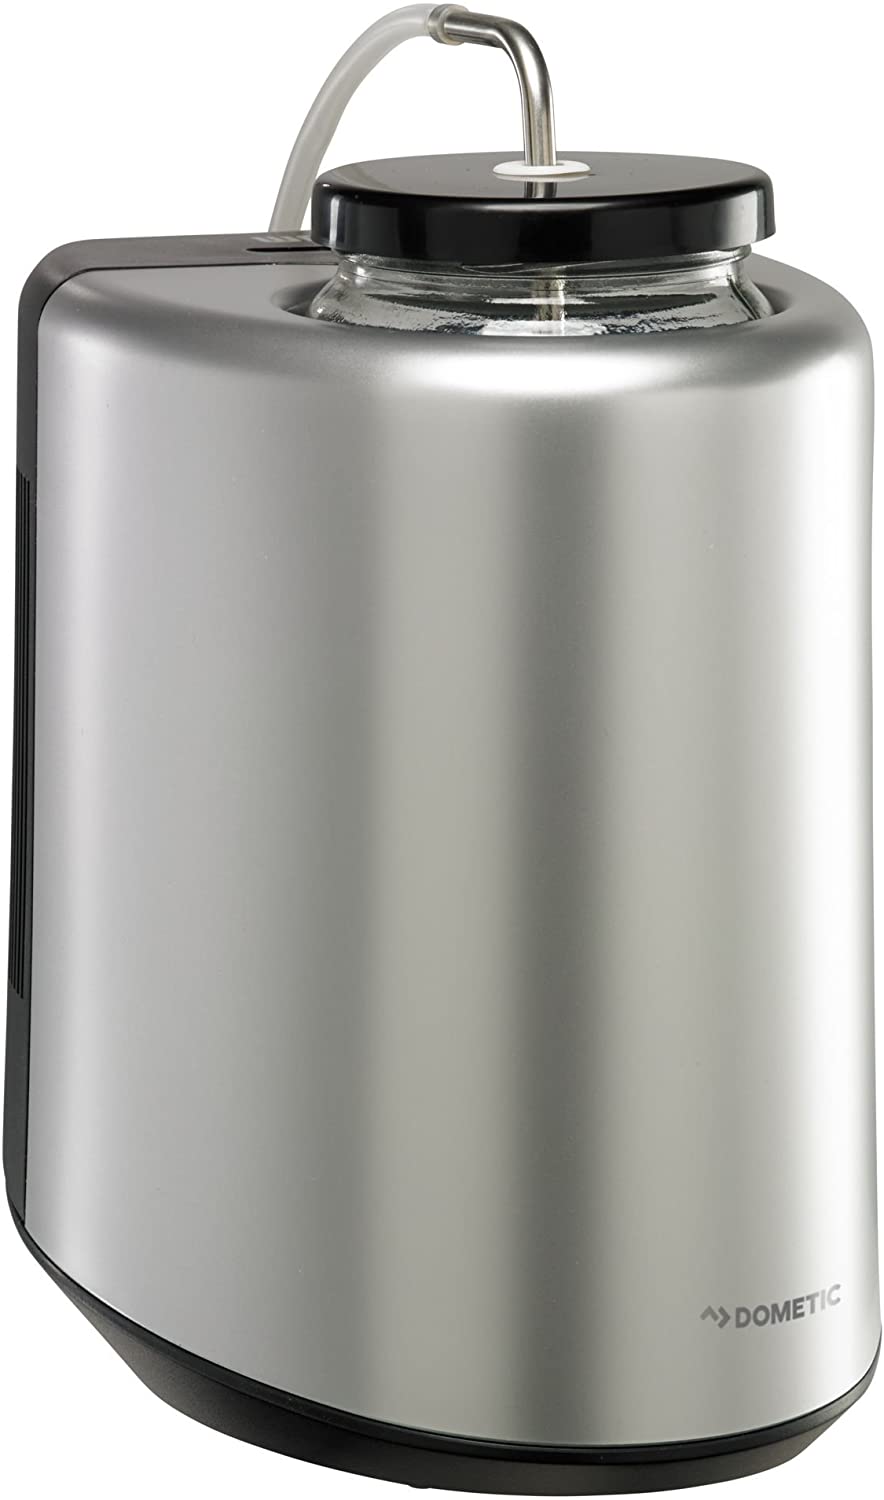 Bravilor Milk Heater HM 505 - CD215 - Buy Online at Nisbets